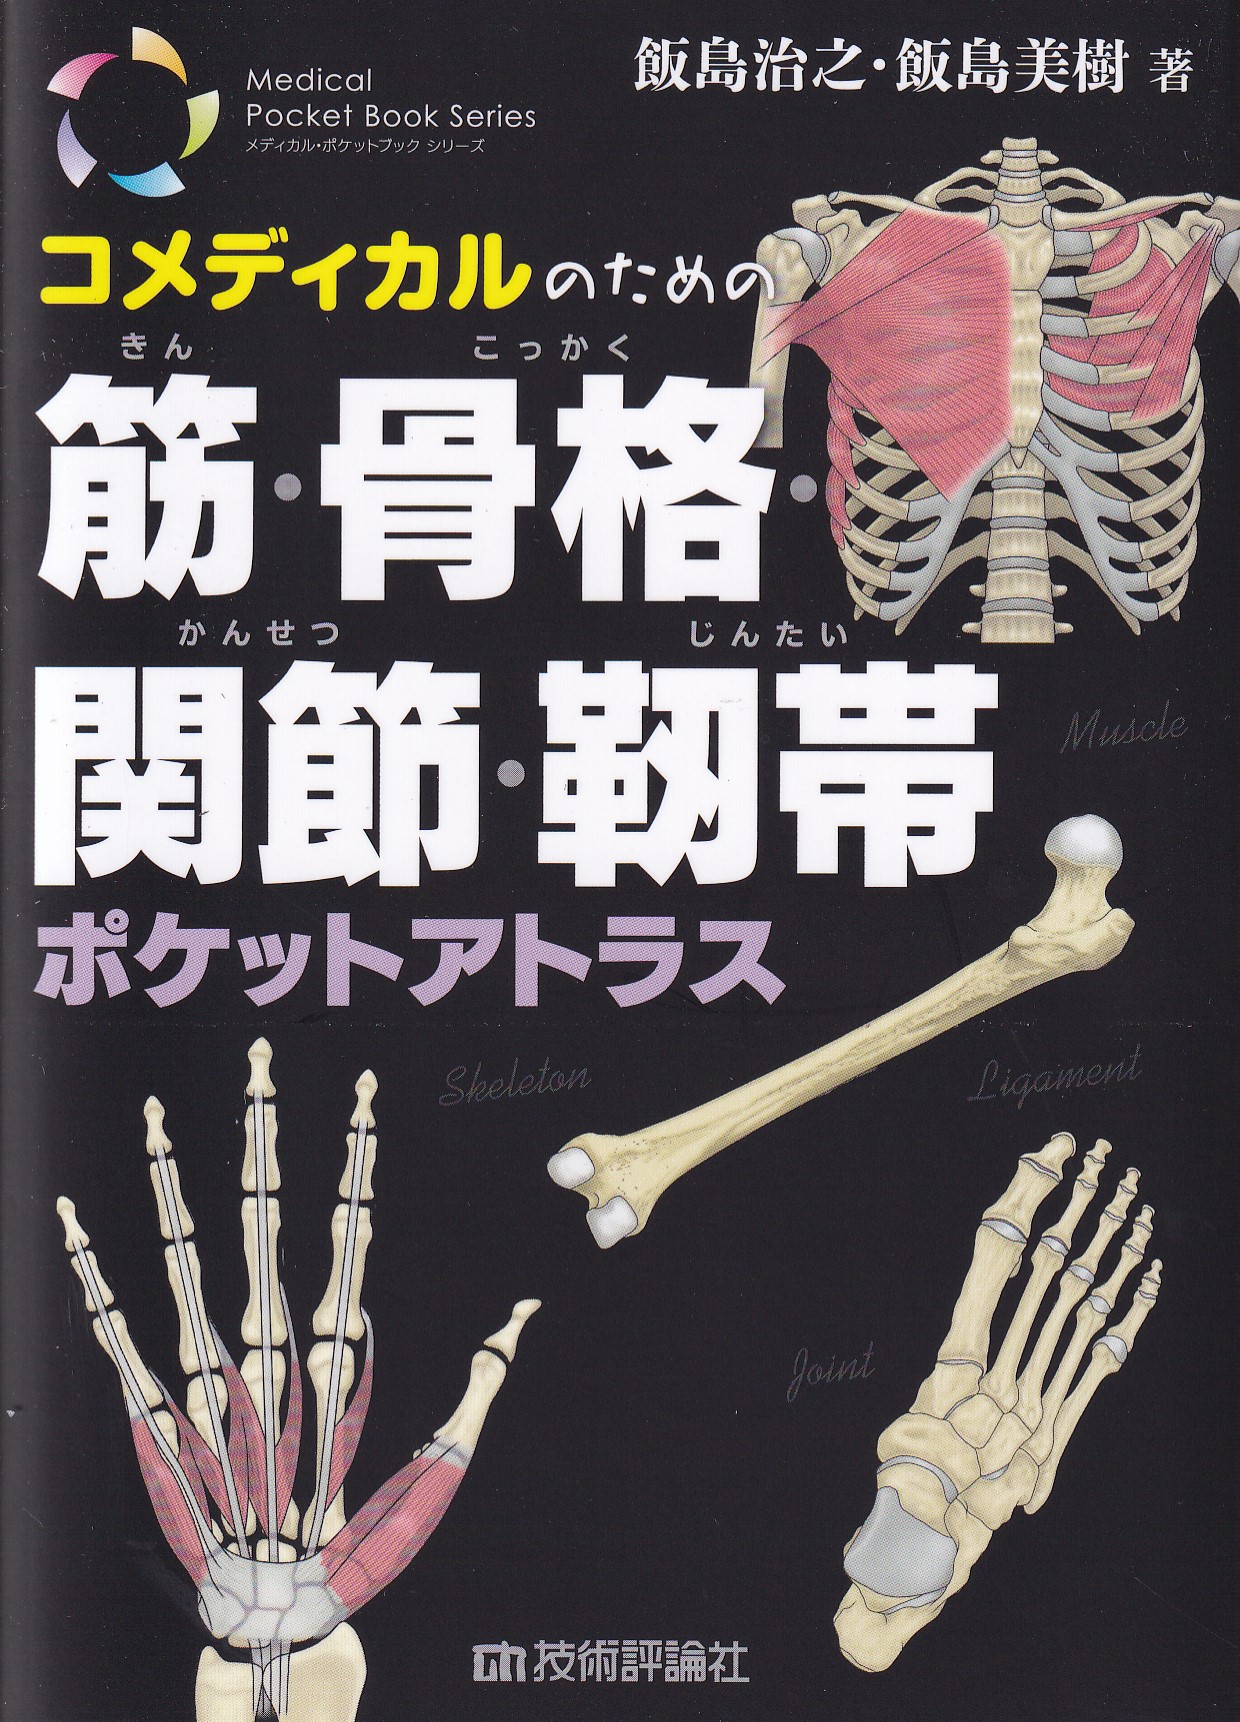 解剖学 1 総説・骨学・靱帯学・筋学〔改訂11版〕 - 健康/医学